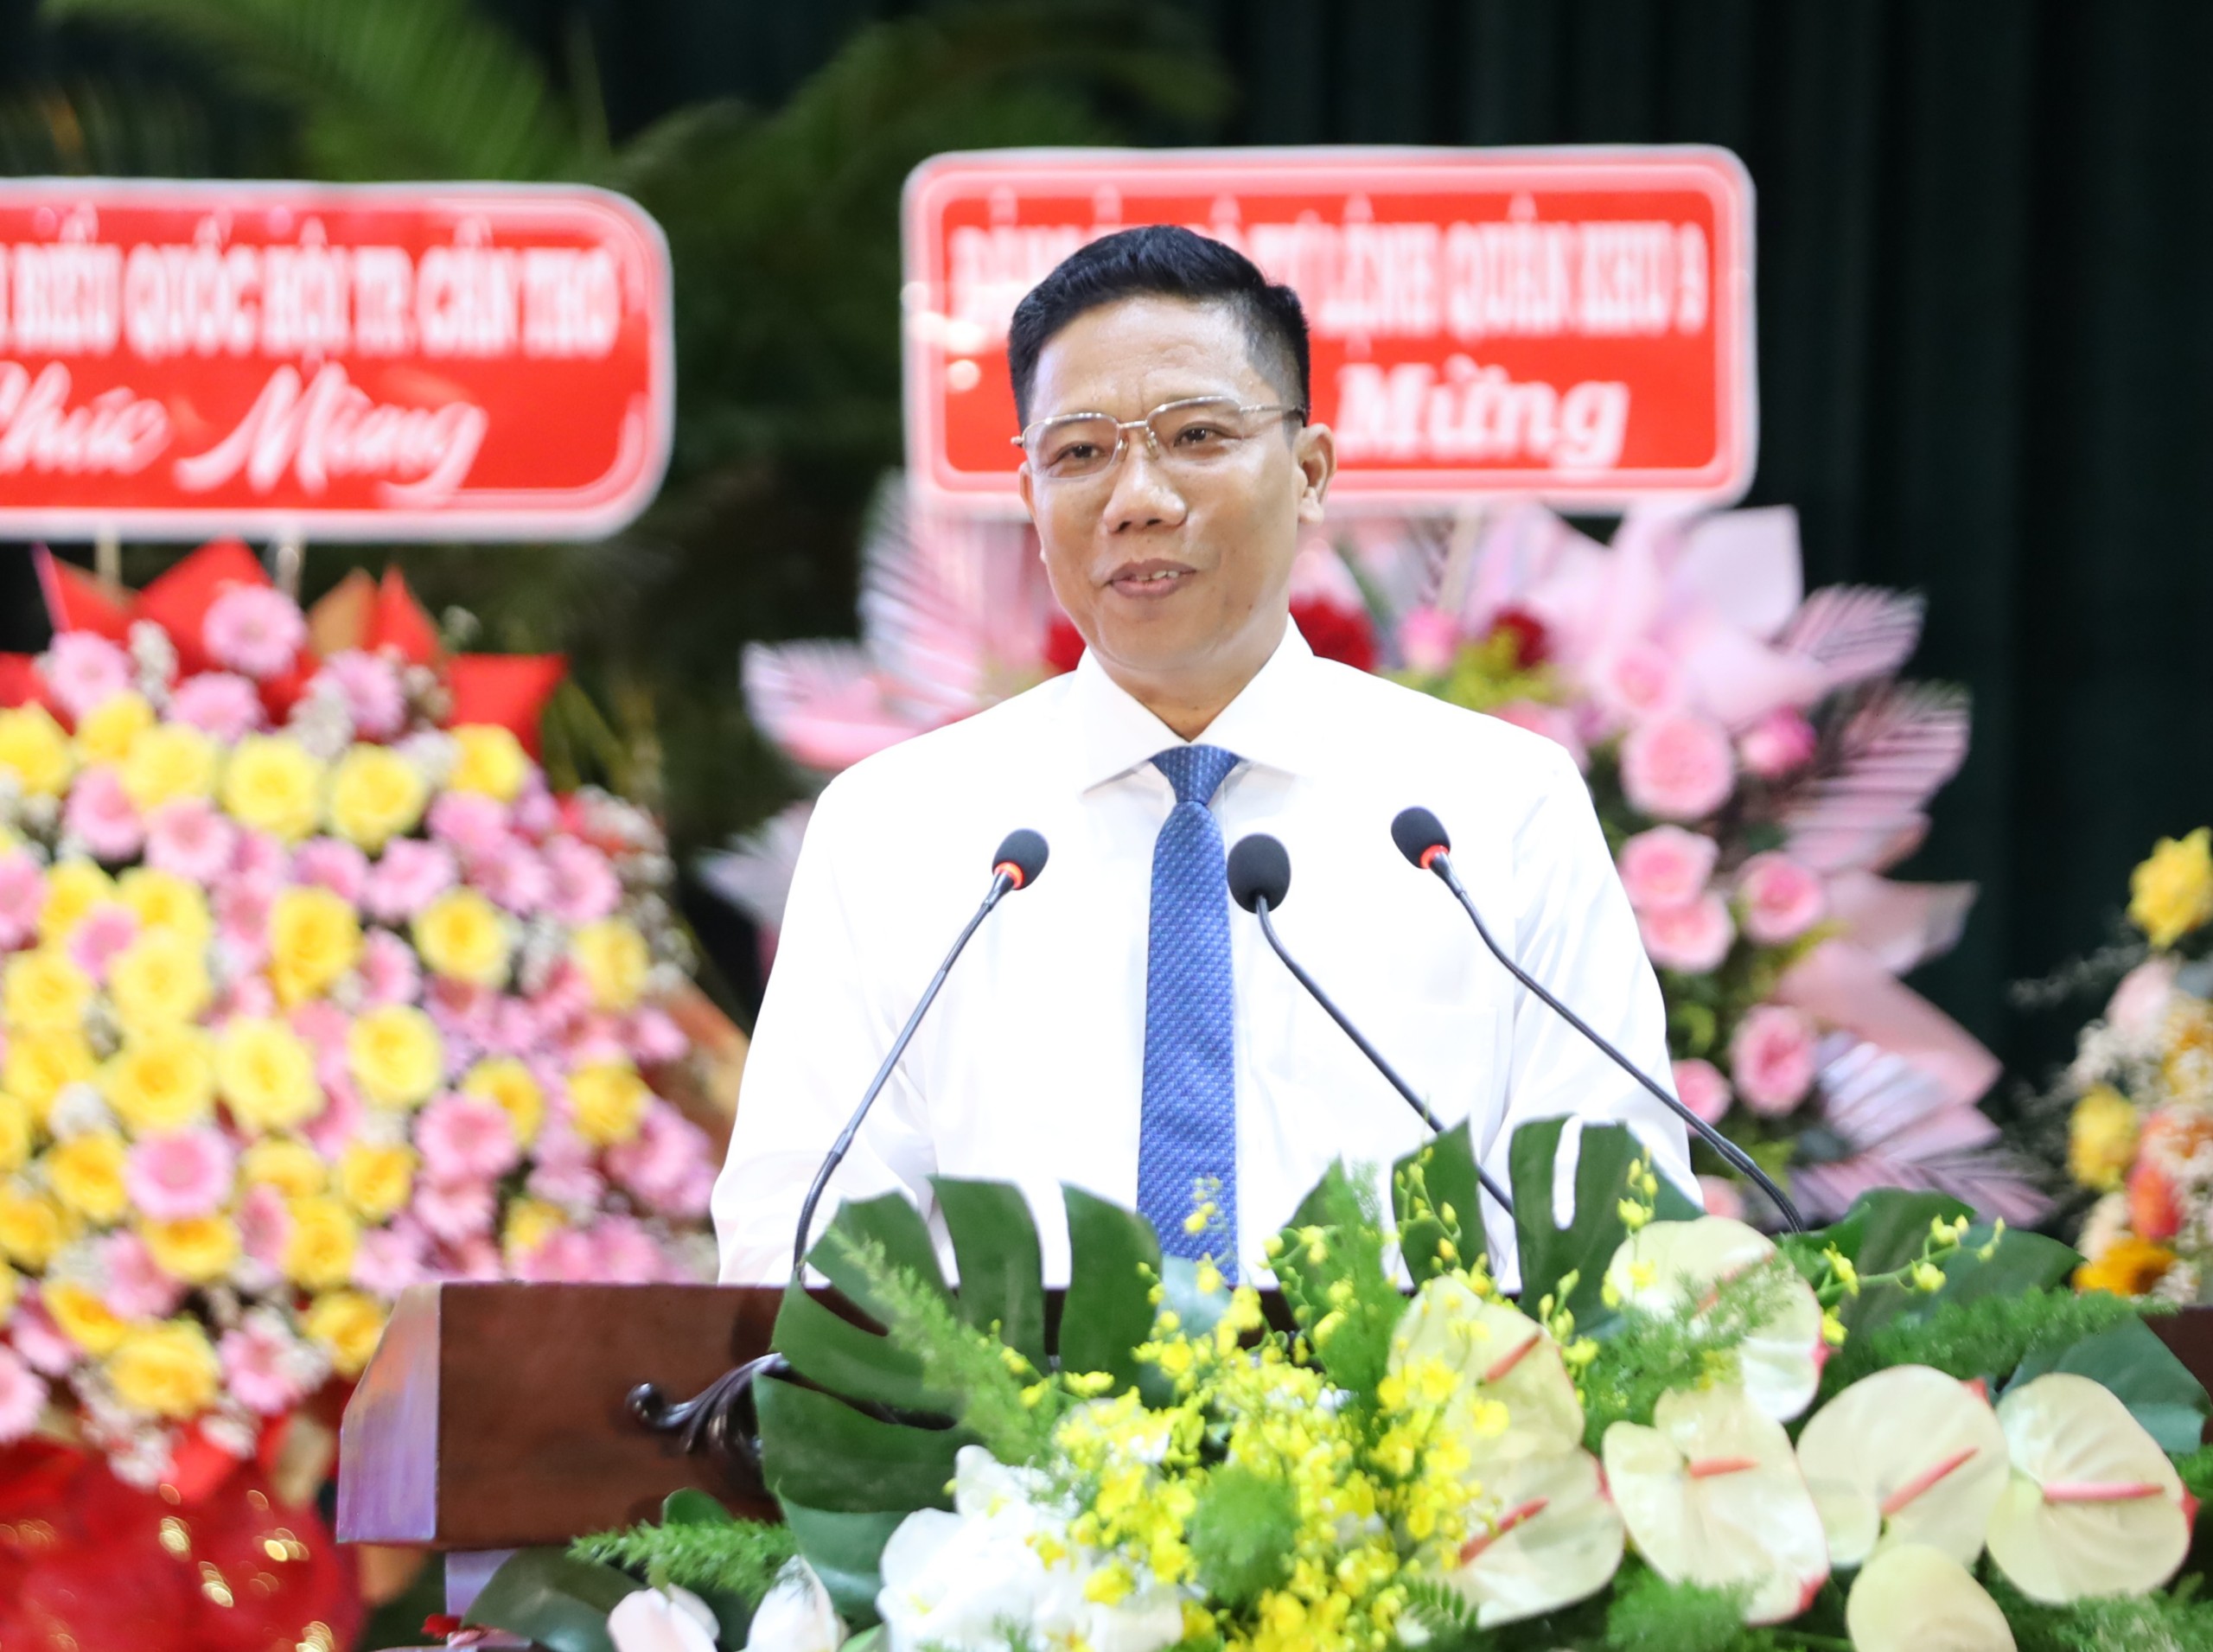 Ông Nguyễn Thực Hiện - Phó Chủ tịch UBND TP. Cần Thơ phát biểu tham luận về công tác phối hợp giữa UBND với Ban Thường trực UBMTTQVN thành phố trong nhiệm kỳ qua.